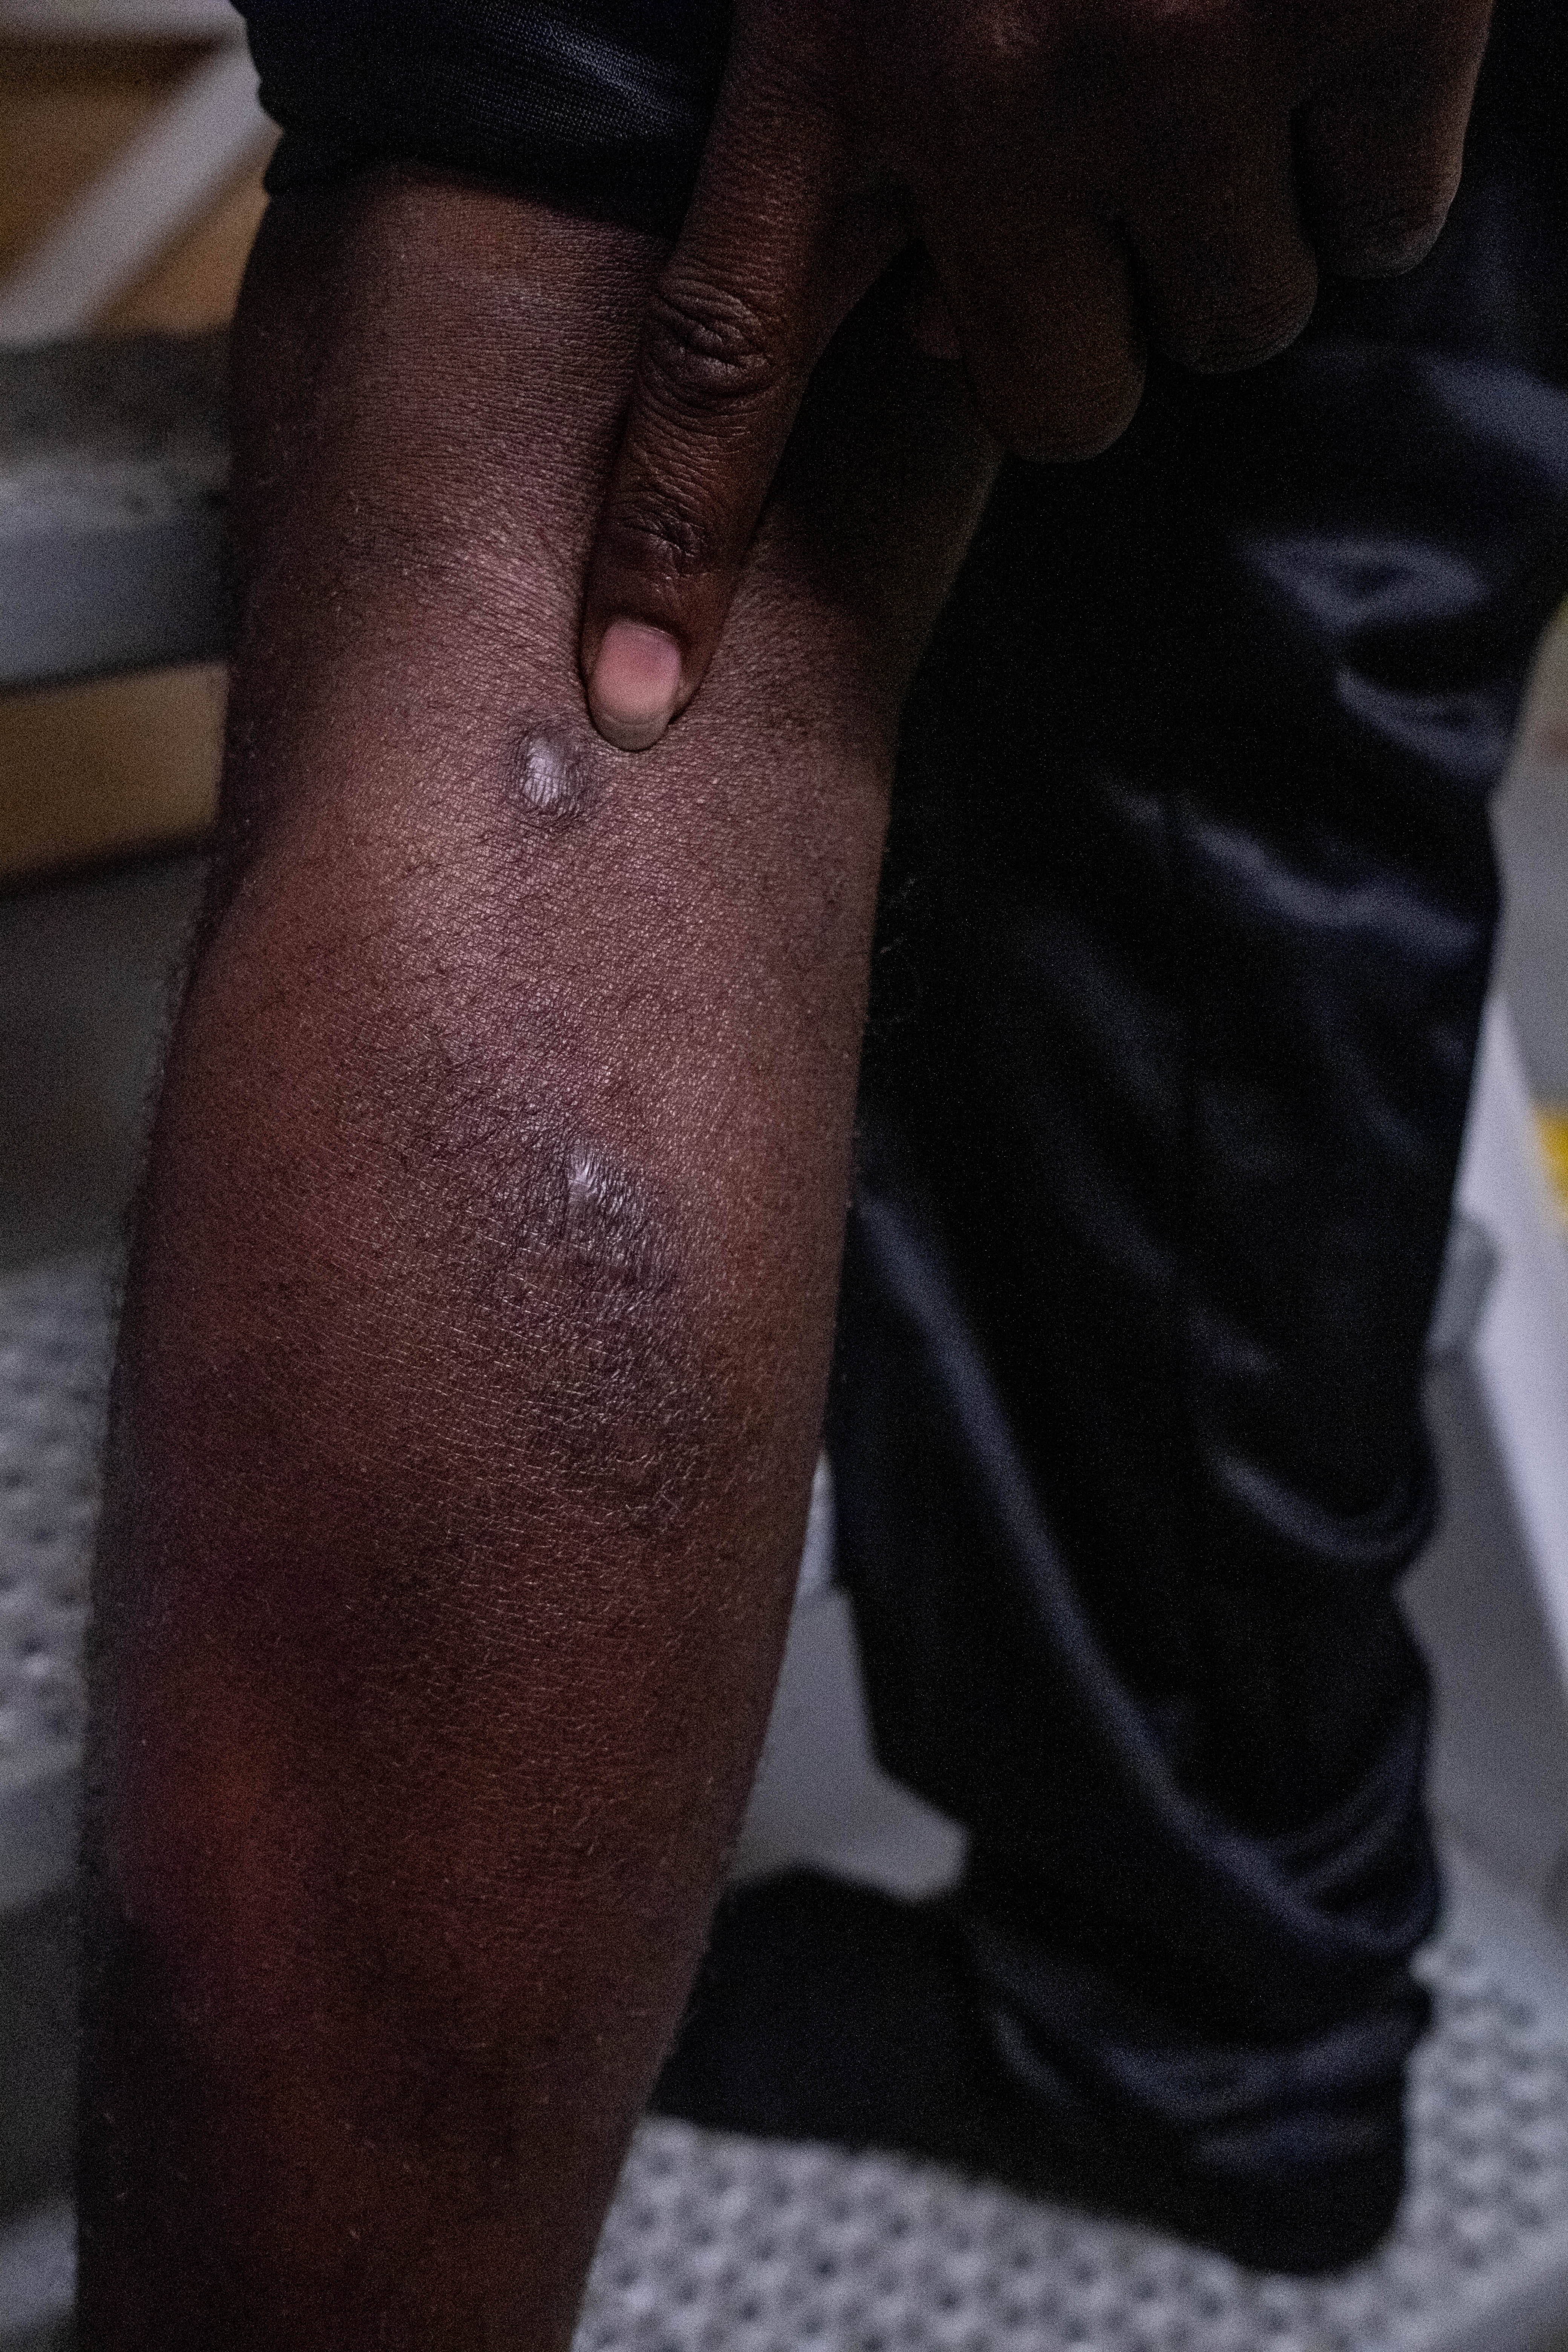 Haidar muestra las cicatrices de las heridas infligidas en un centro de detención en Libia donde sufrió tortura y violencia, incluida la paliza con un objeto metálico. © Nyancho NwaNri ​